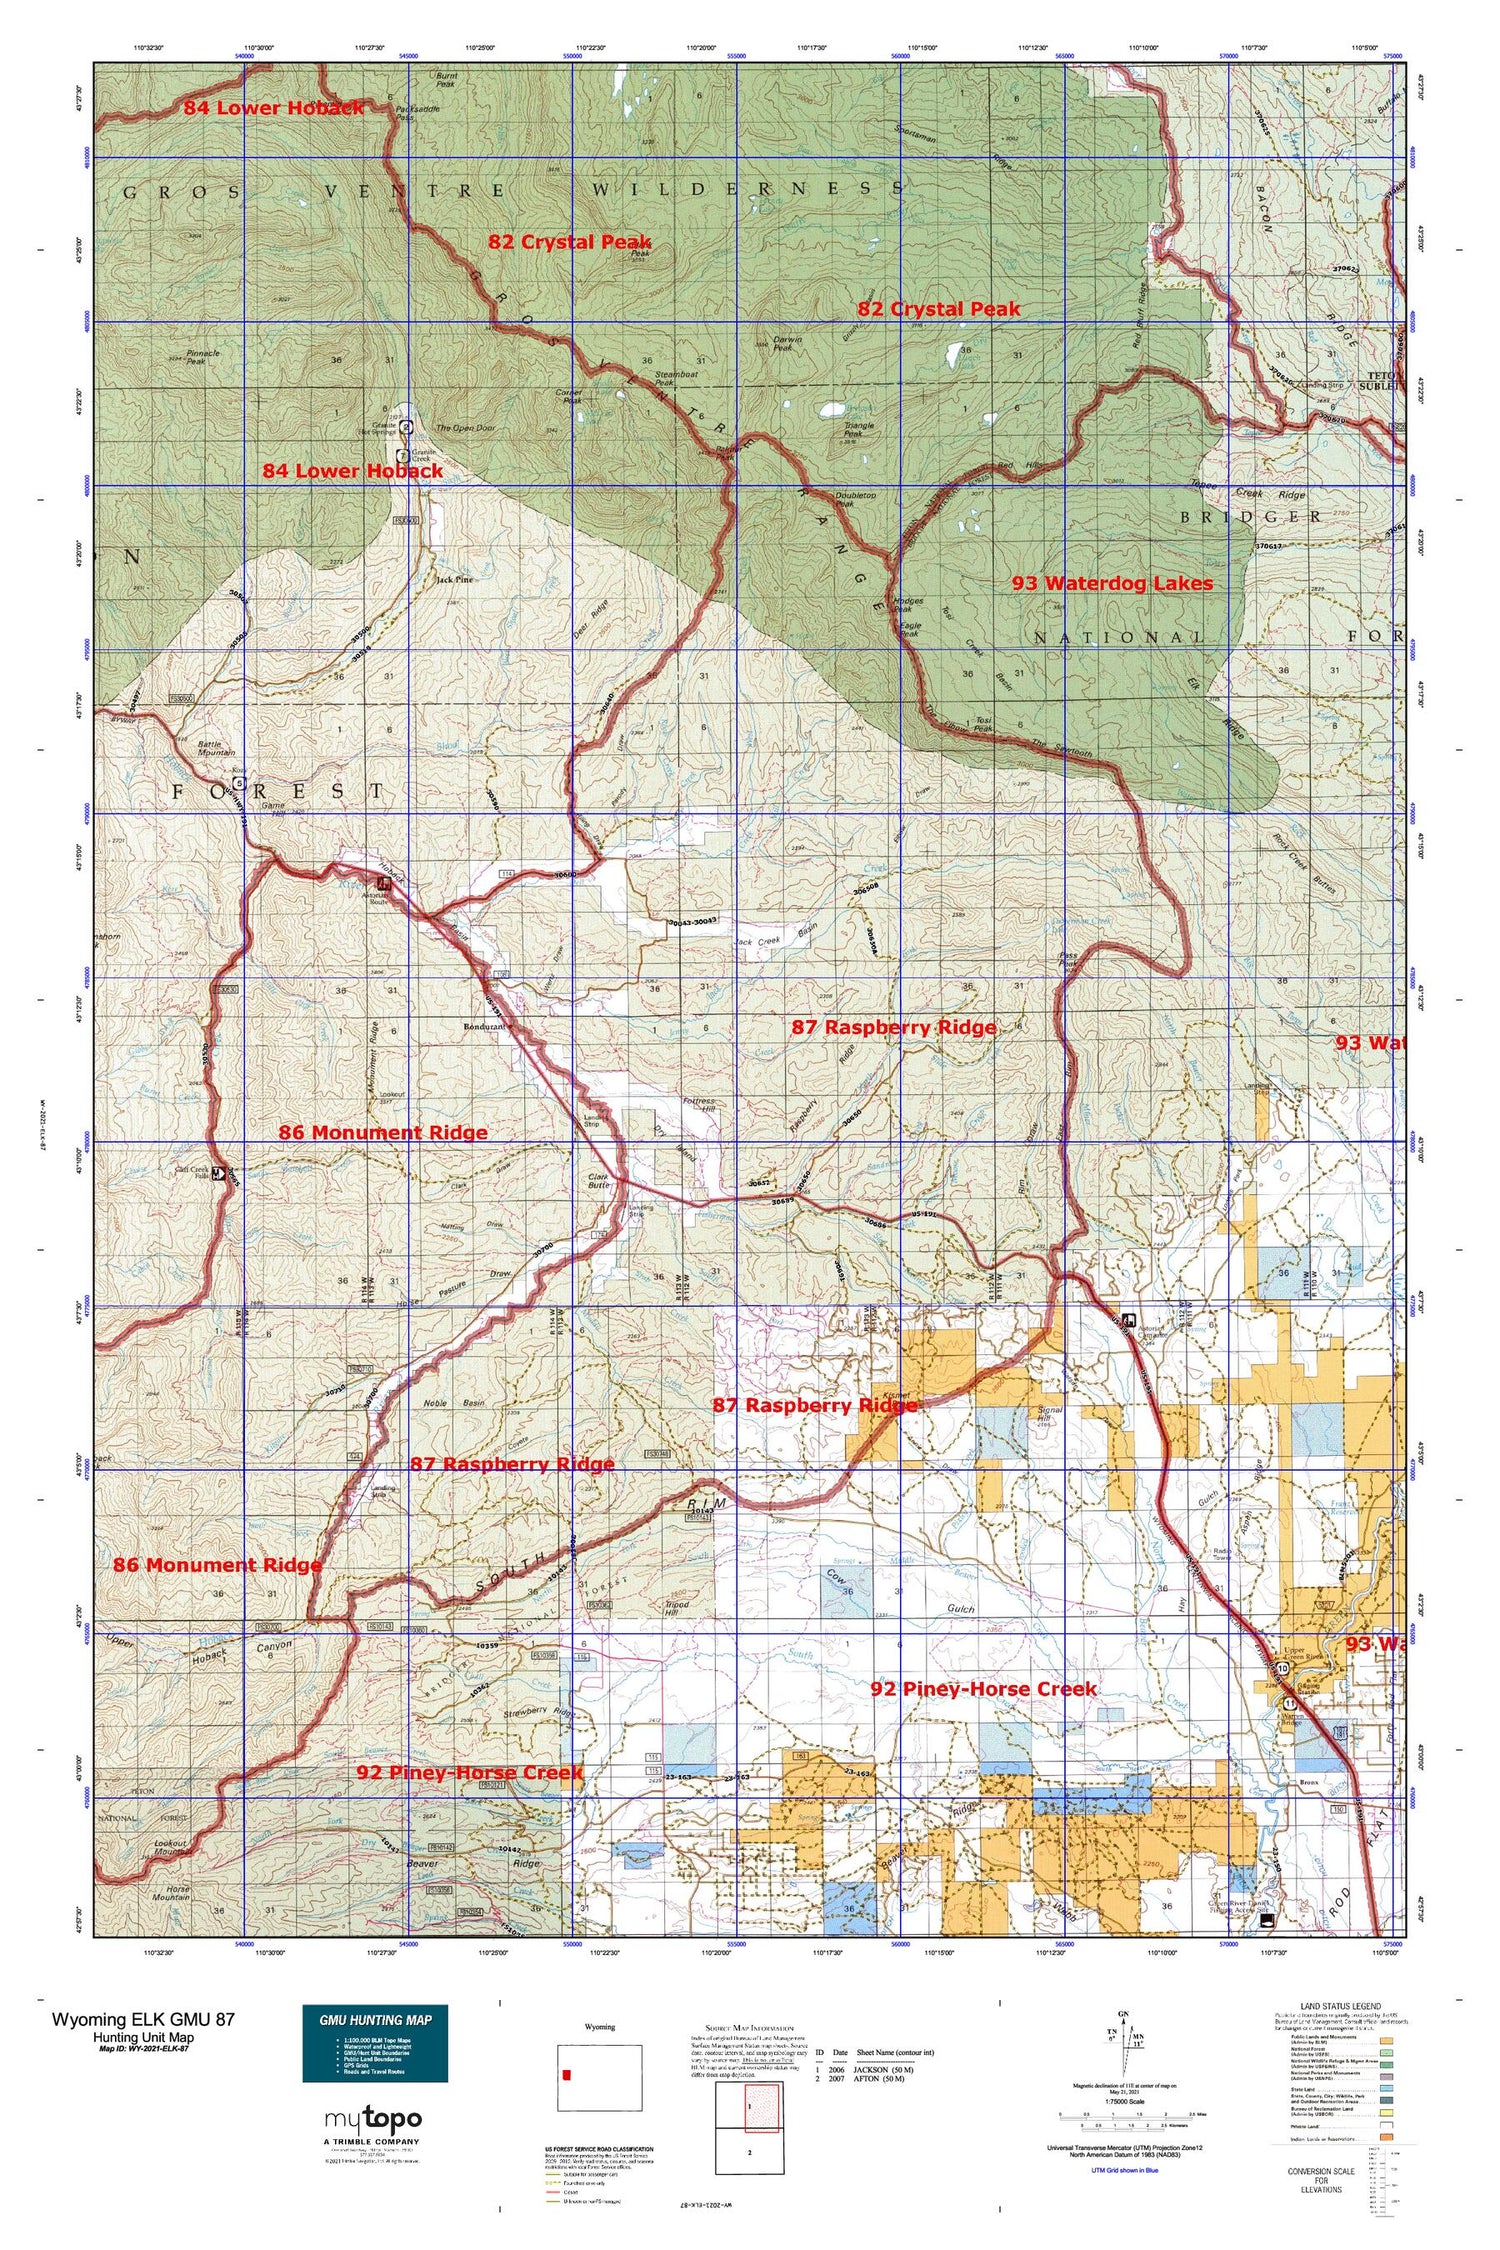 Wyoming Elk GMU 87 Map Image